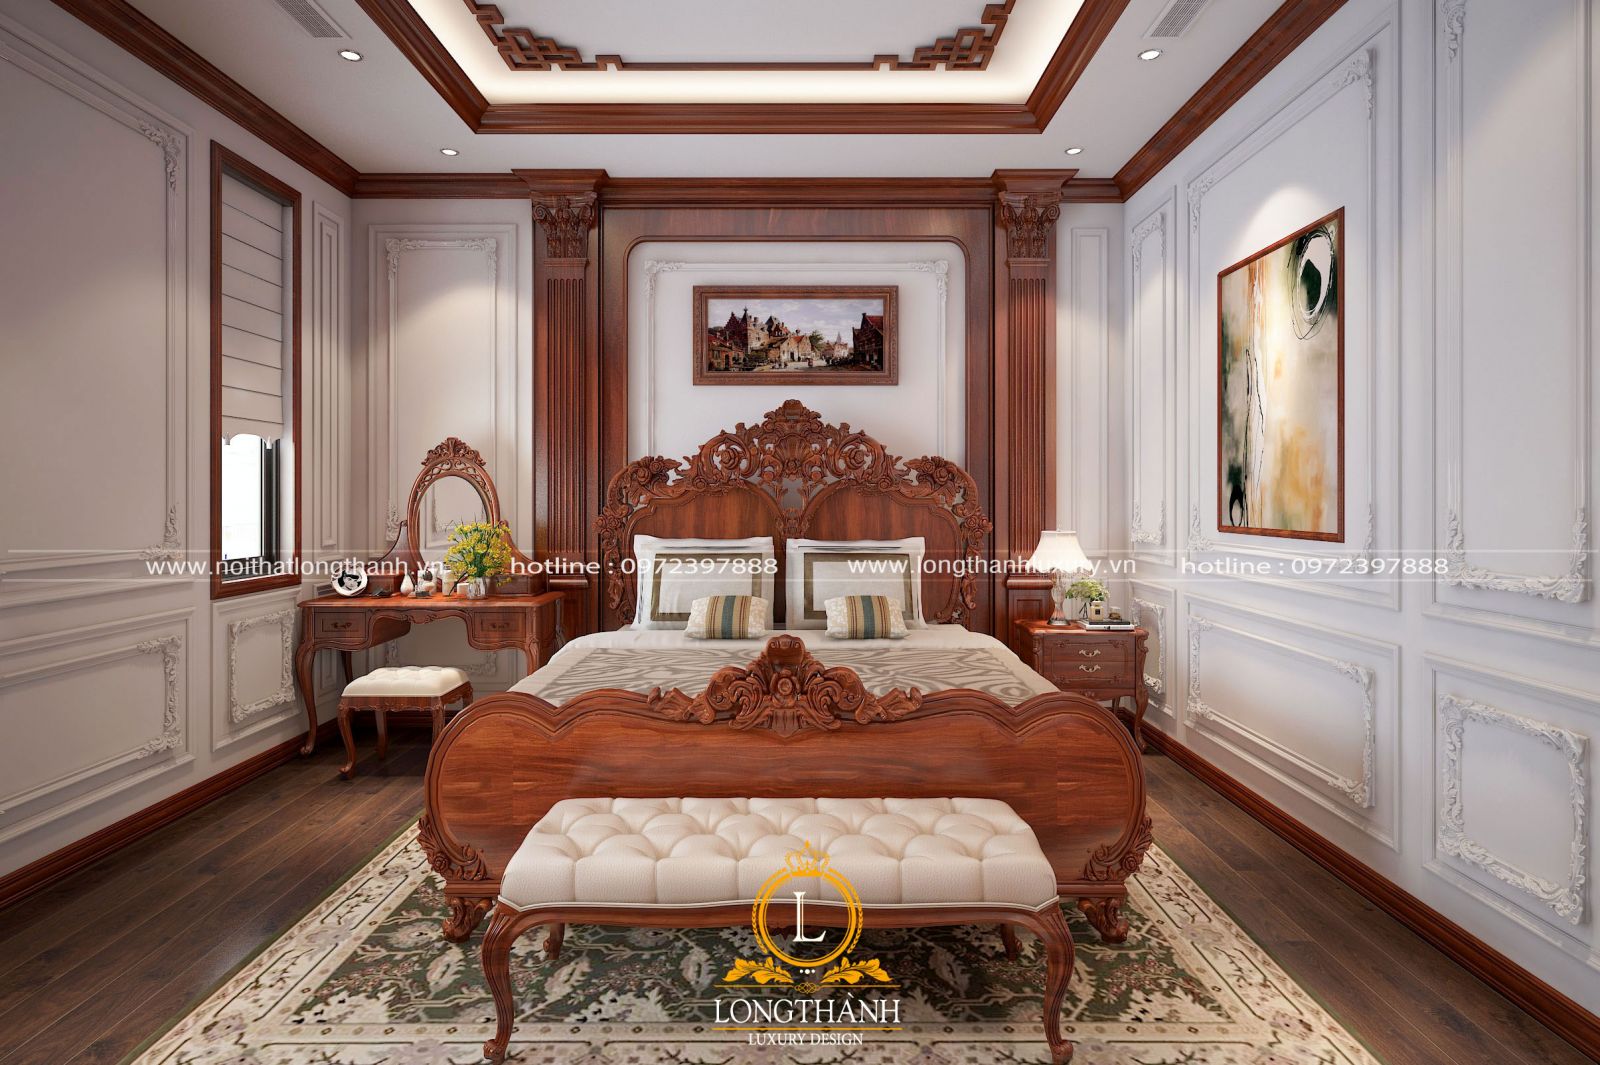 Thiết kế phòng ngủ phong cách tân cổ điển sang trọng và ấn tượng